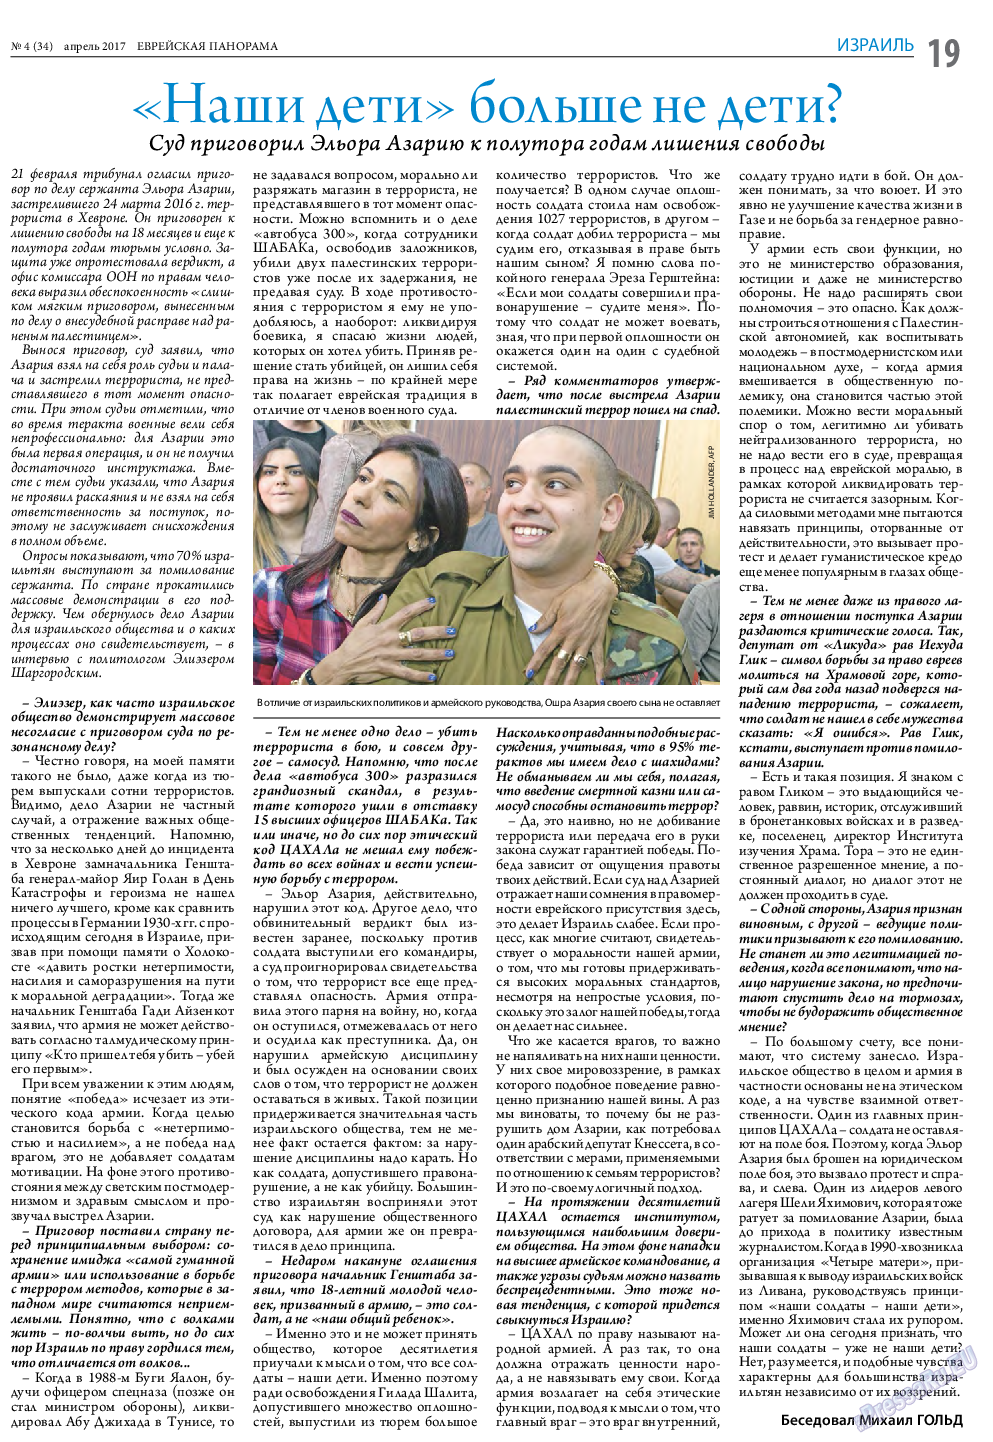 Еврейская панорама (газета). 2017 год, номер 4, стр. 19